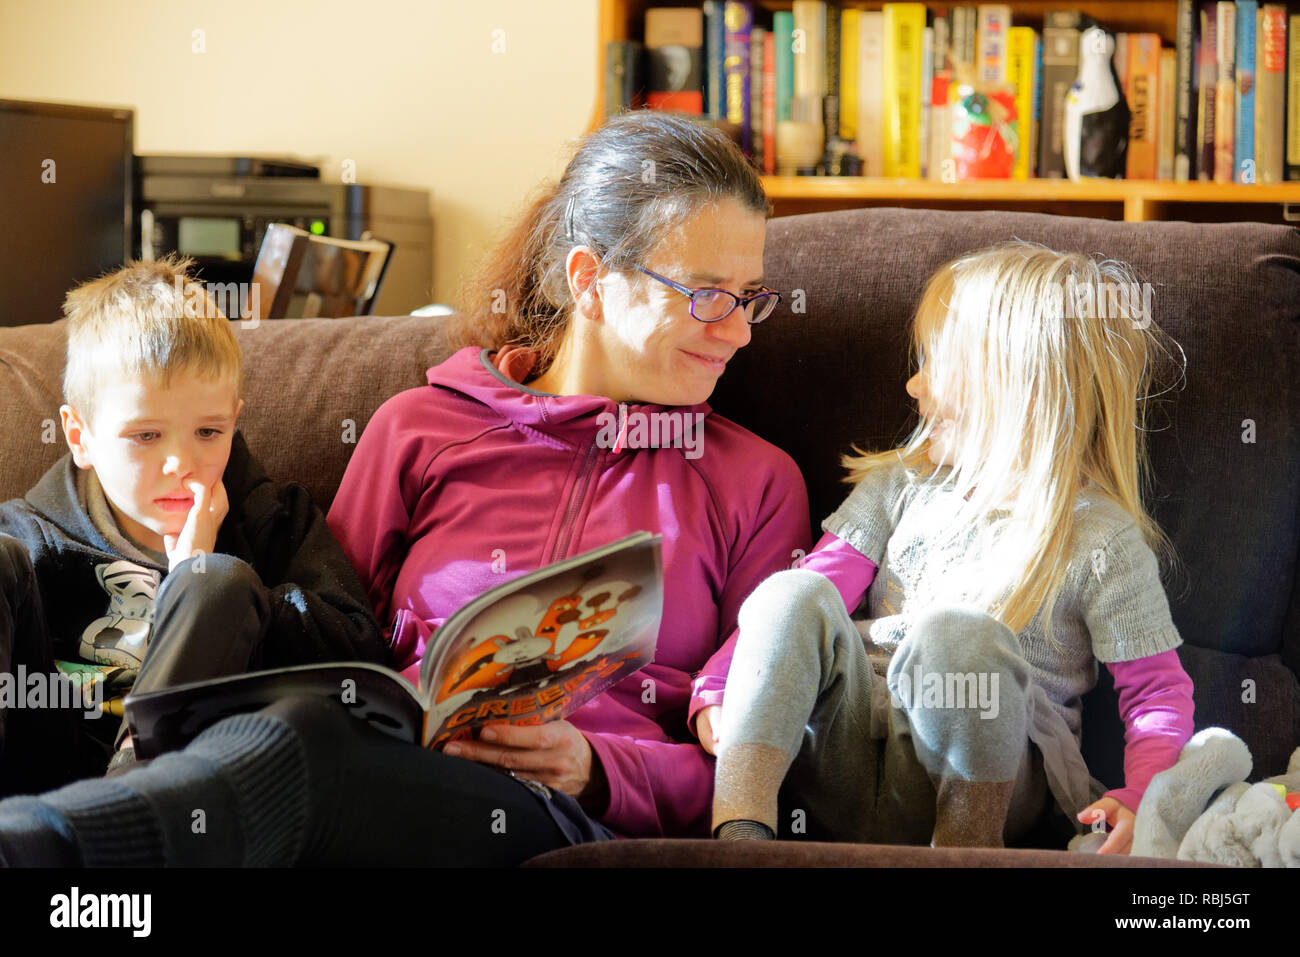 Une maman s'assit sur un canapé-lit un livre à ses deux jeunes enfants Banque D'Images